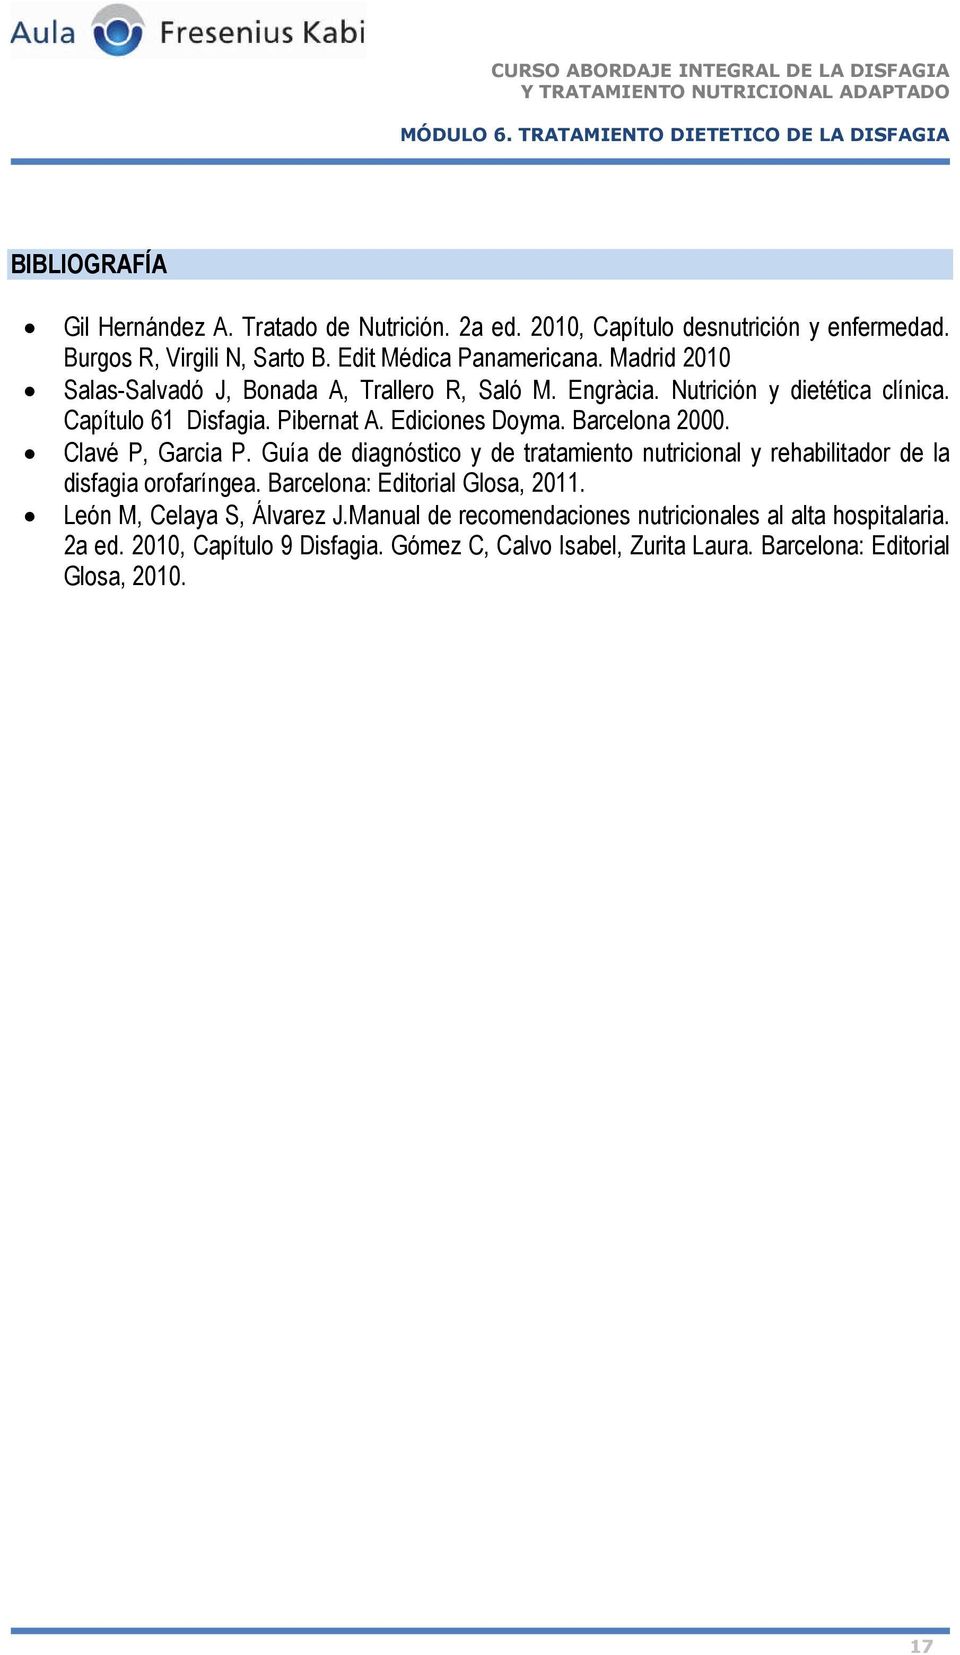 Clavé P, Garcia P. Guía de diagnóstico y de tratamiento nutricional y rehabilitador de la disfagia orofaríngea. Barcelona: Editorial Glosa, 2011.